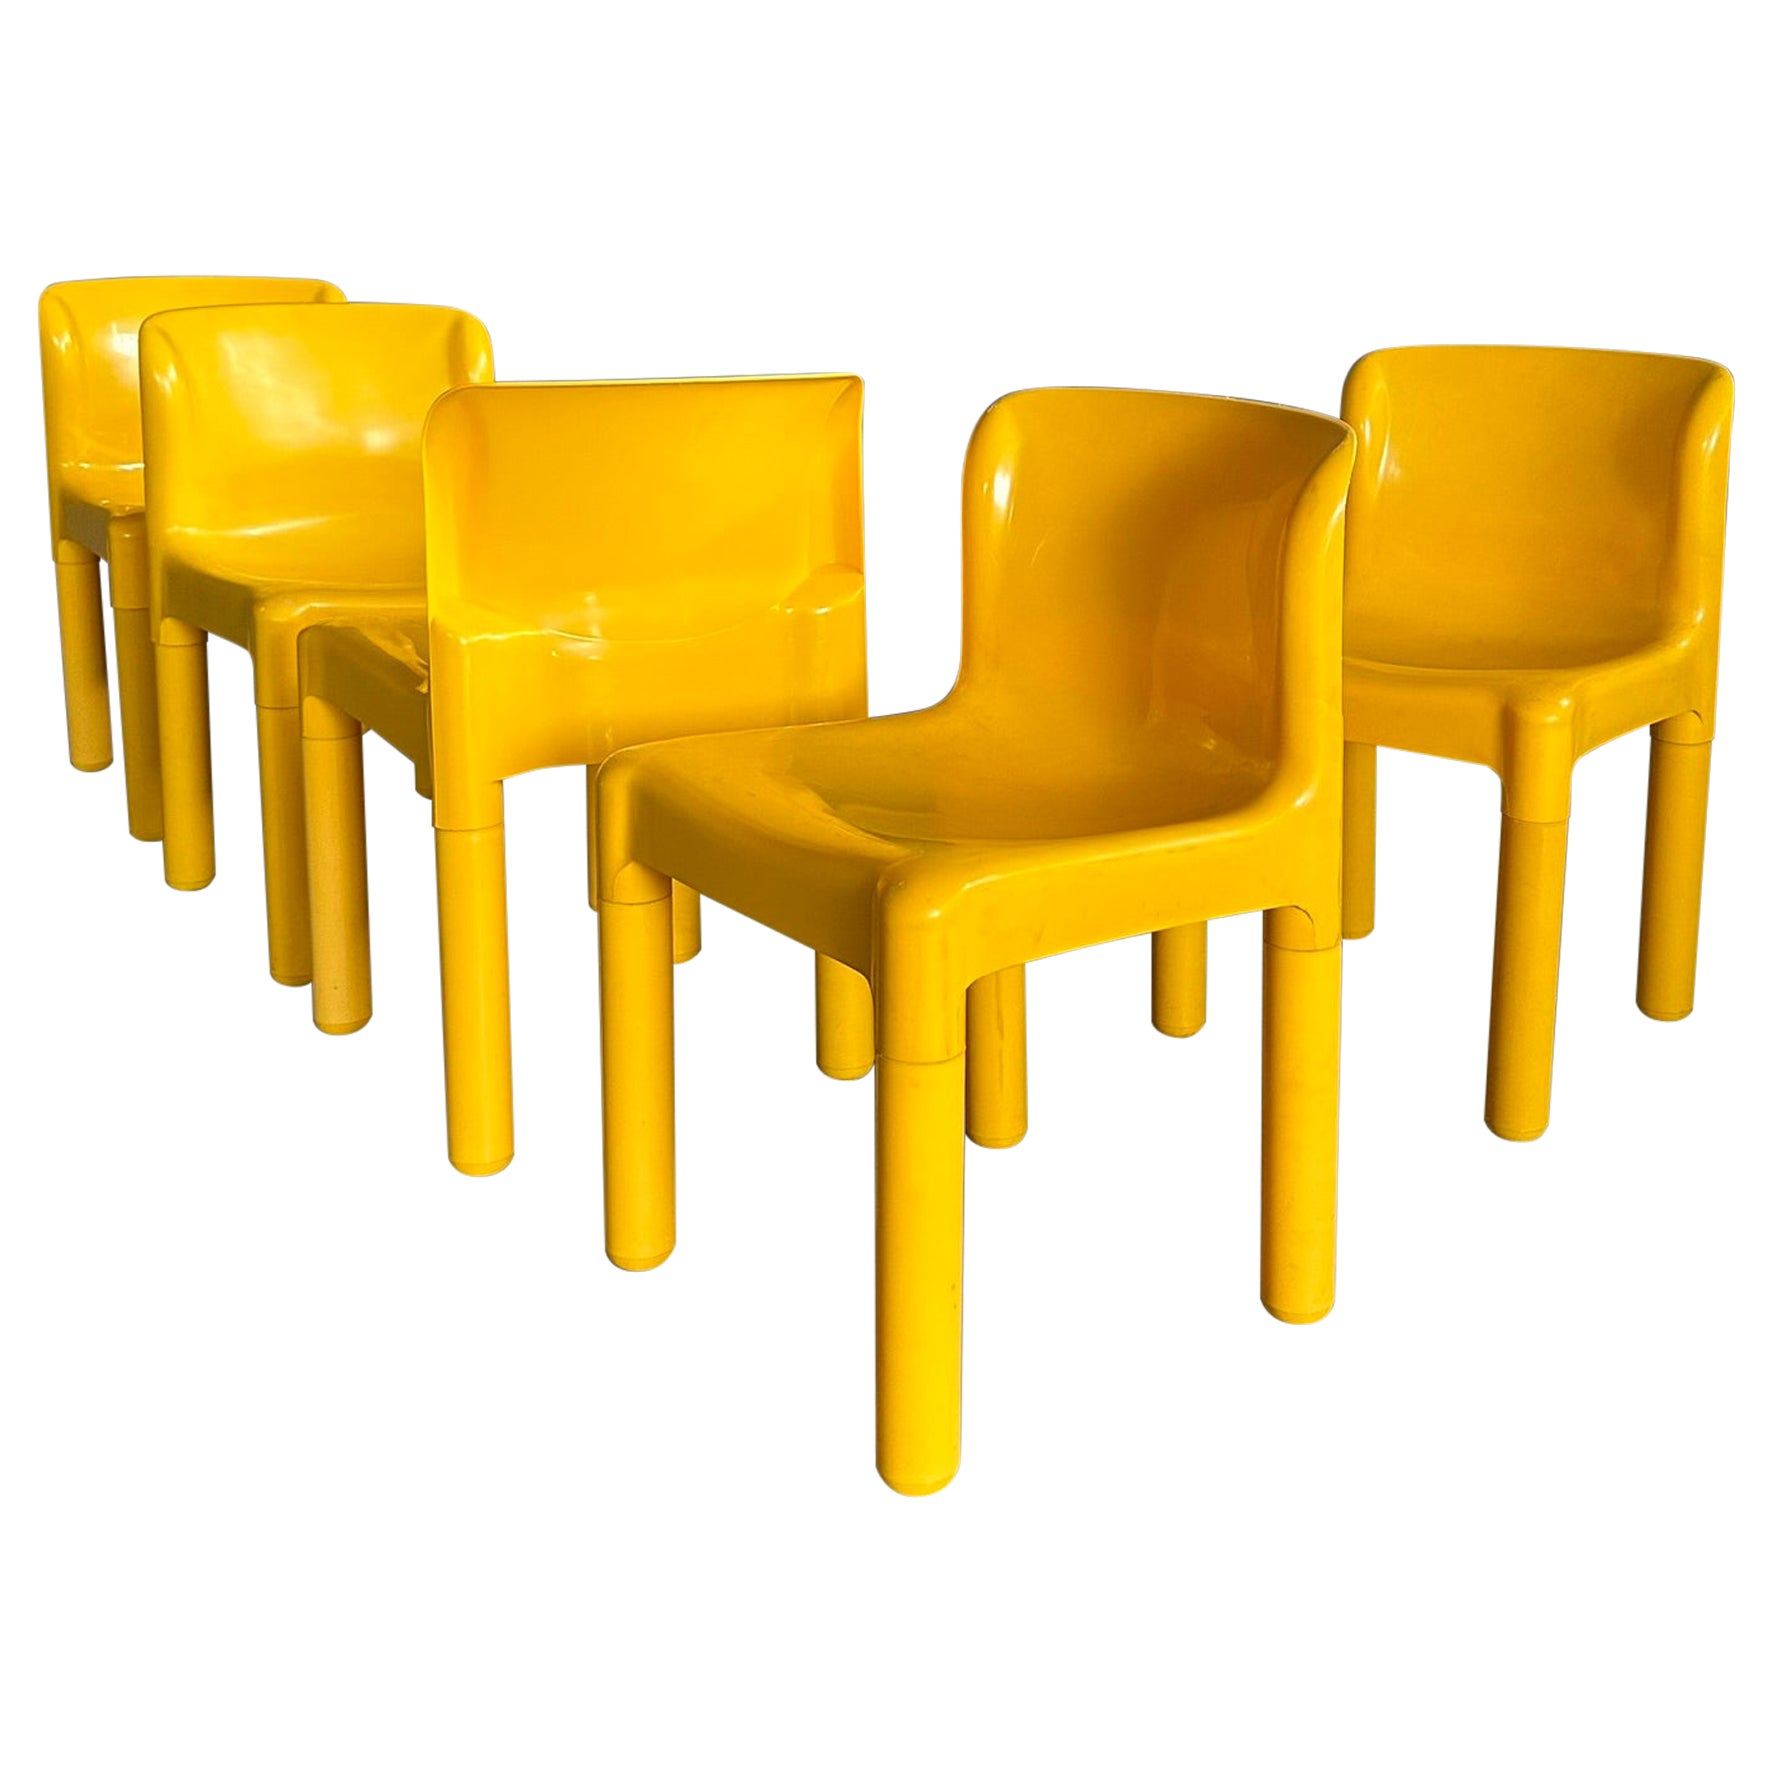 Ensemble de 5 chaises jaune vif mod. 4875 conçues par Carlo Bartoli pour Kartell 